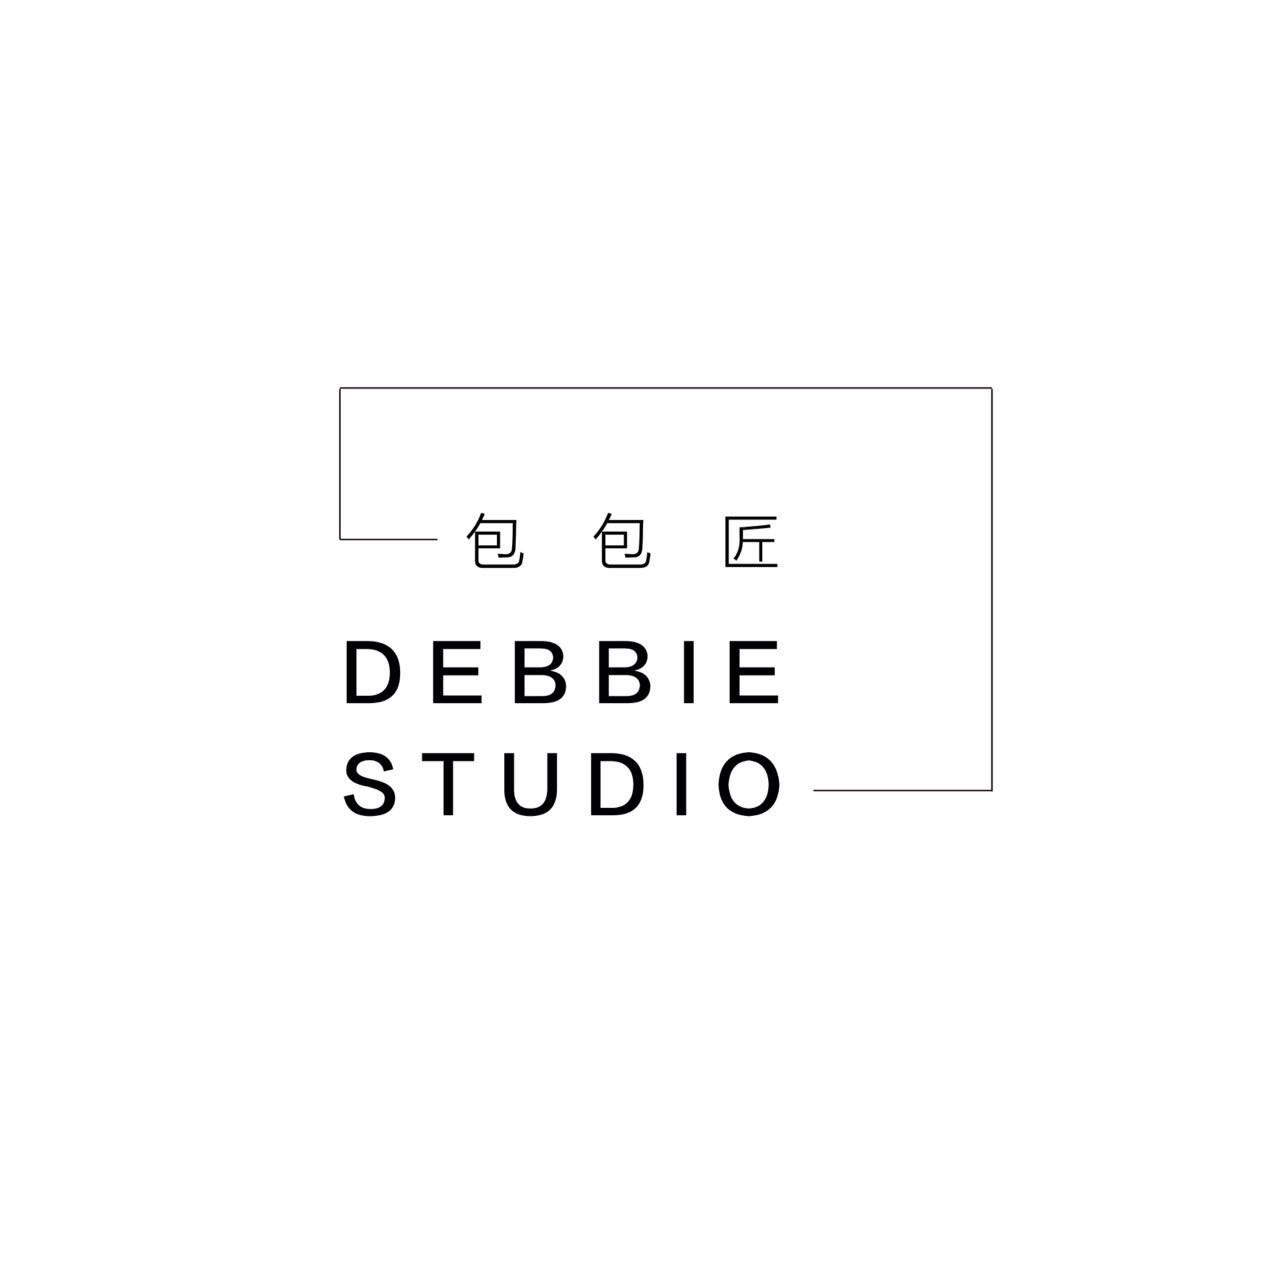 DEBBIE STUDIO